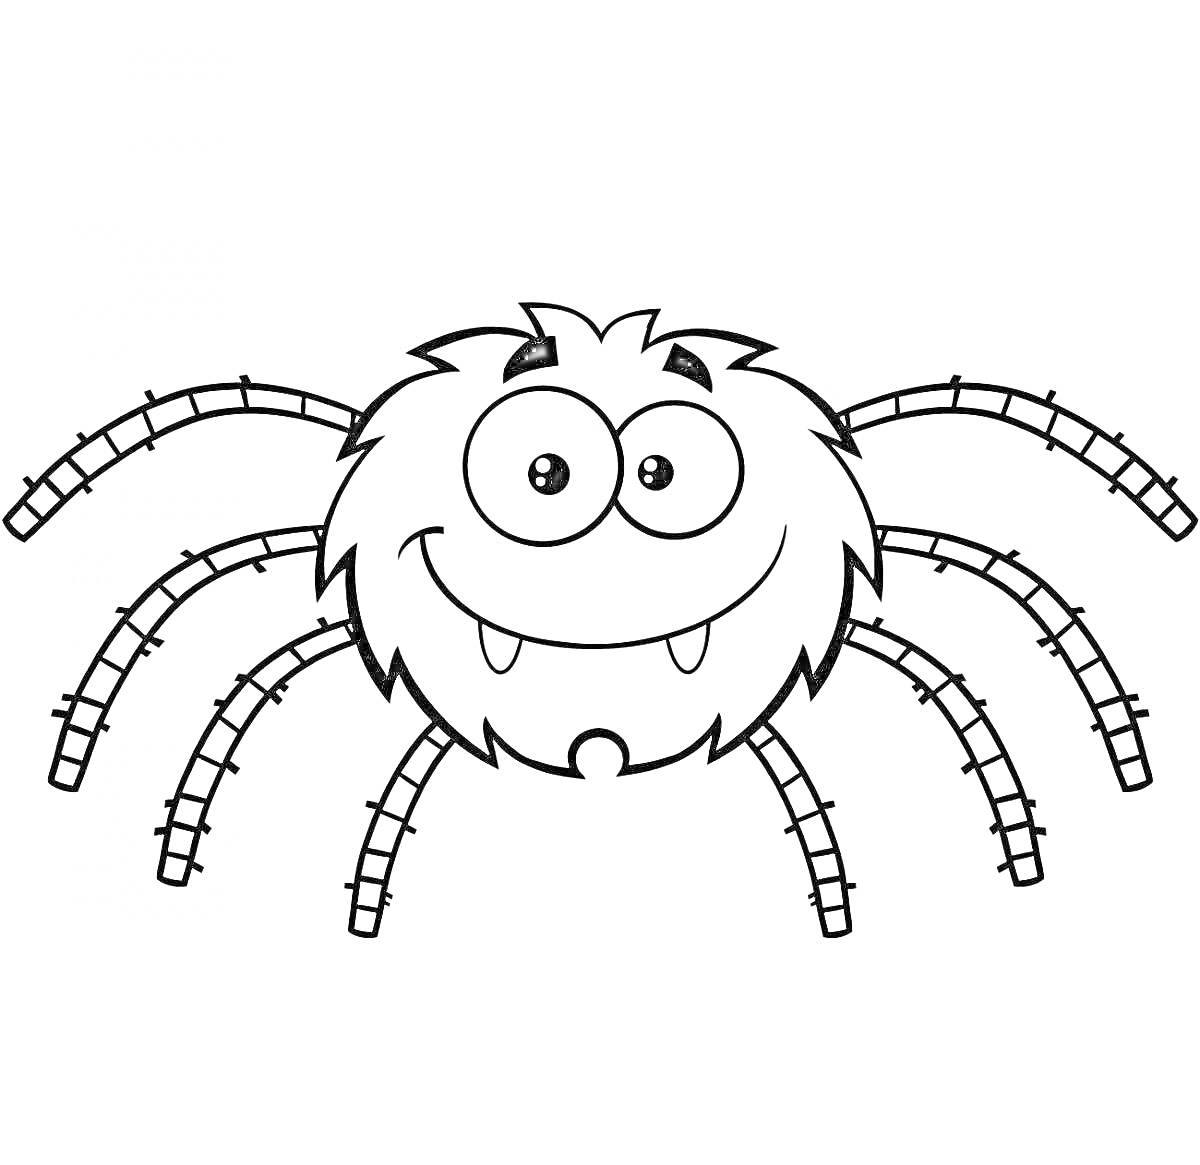 Милый улыбающийся паук с большими глазами и острыми зубами